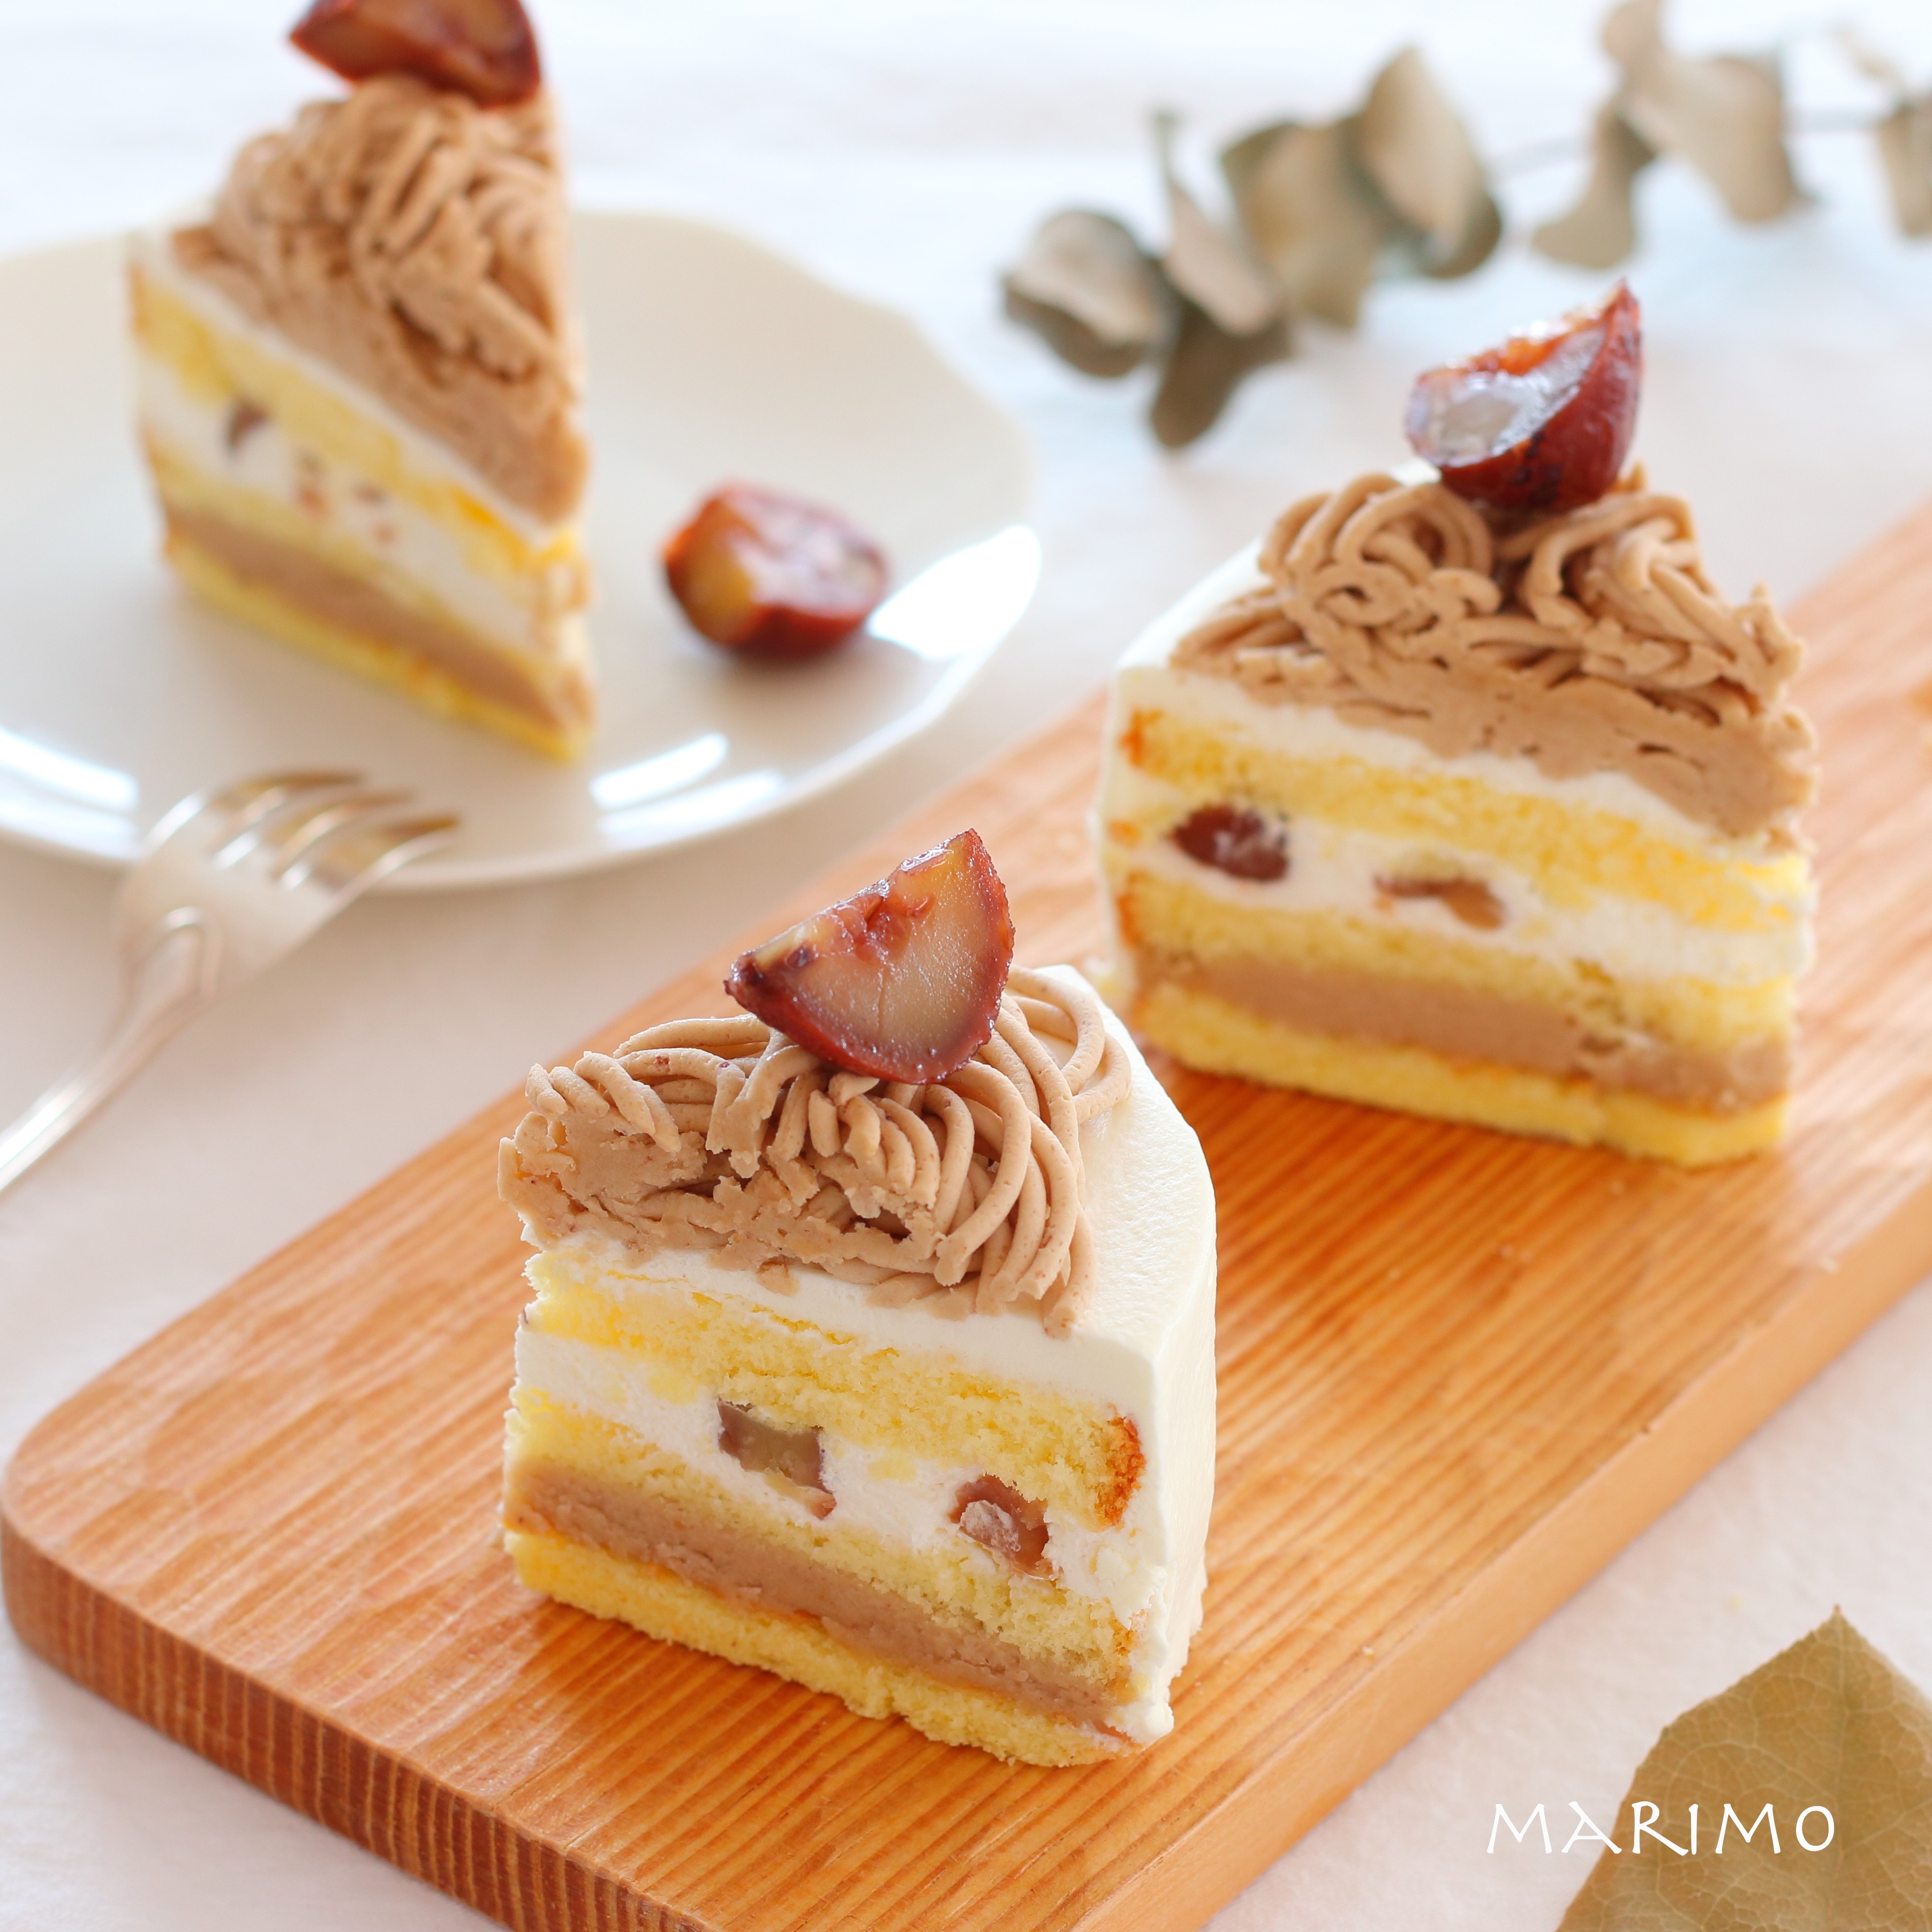 お菓子レシピ モンブラン と ショートケーキ のハイブリッドケーキができました Marimo Cafe 可愛くて美味しいお菓子レシピ Powered By ライブドアブログ